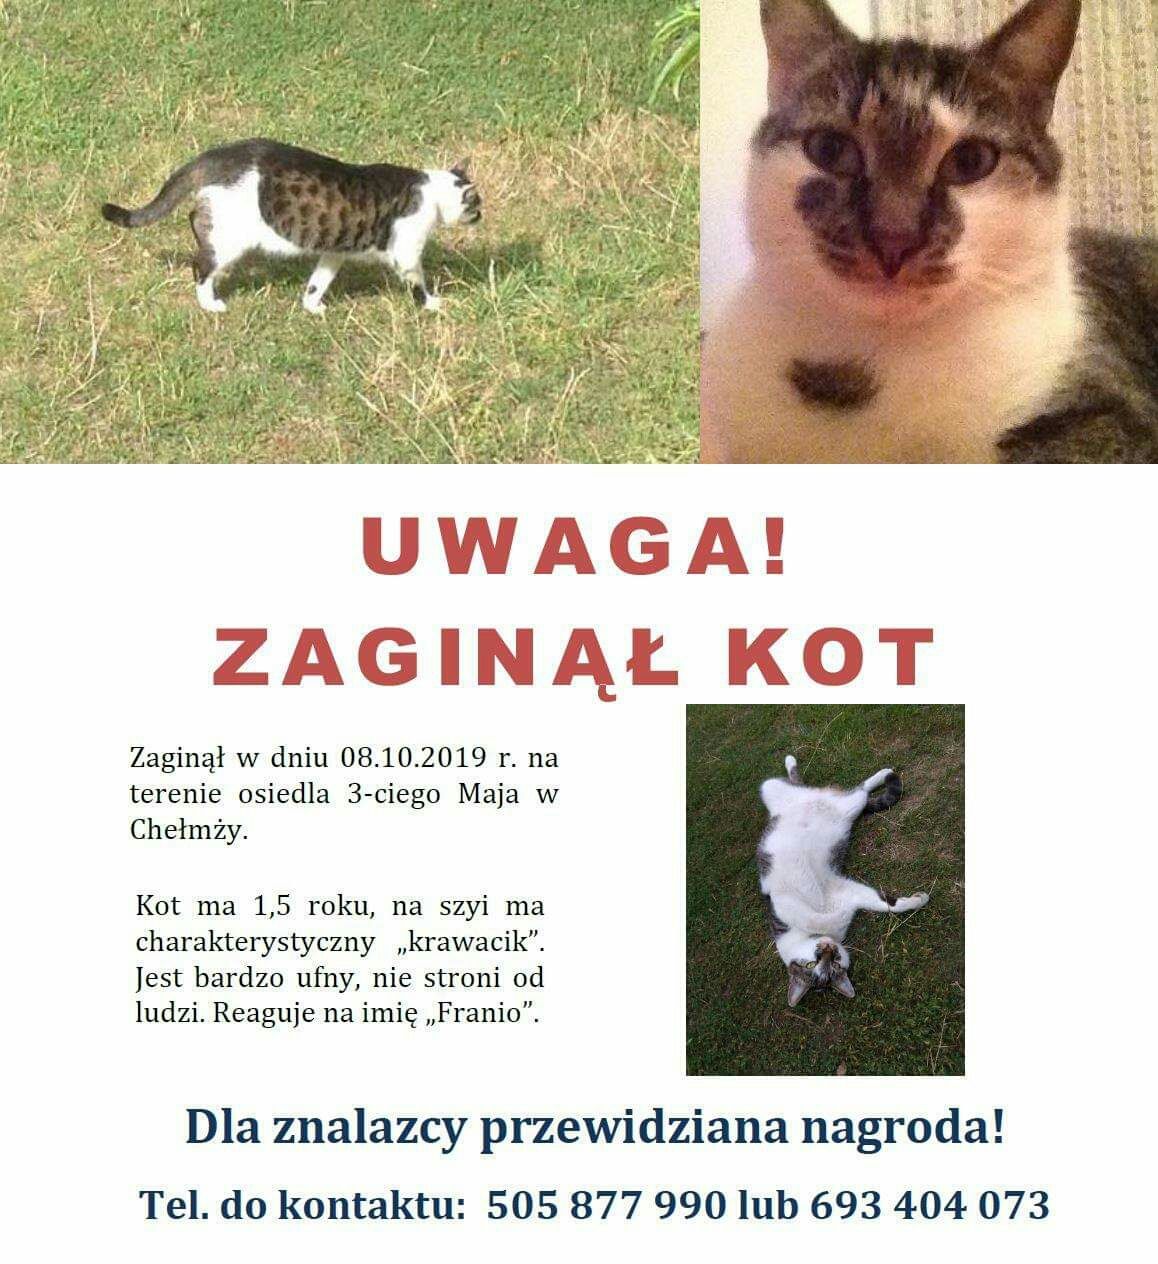 Chełmża, zaginął kot - NAGRODA 500 zł dla znalazcy